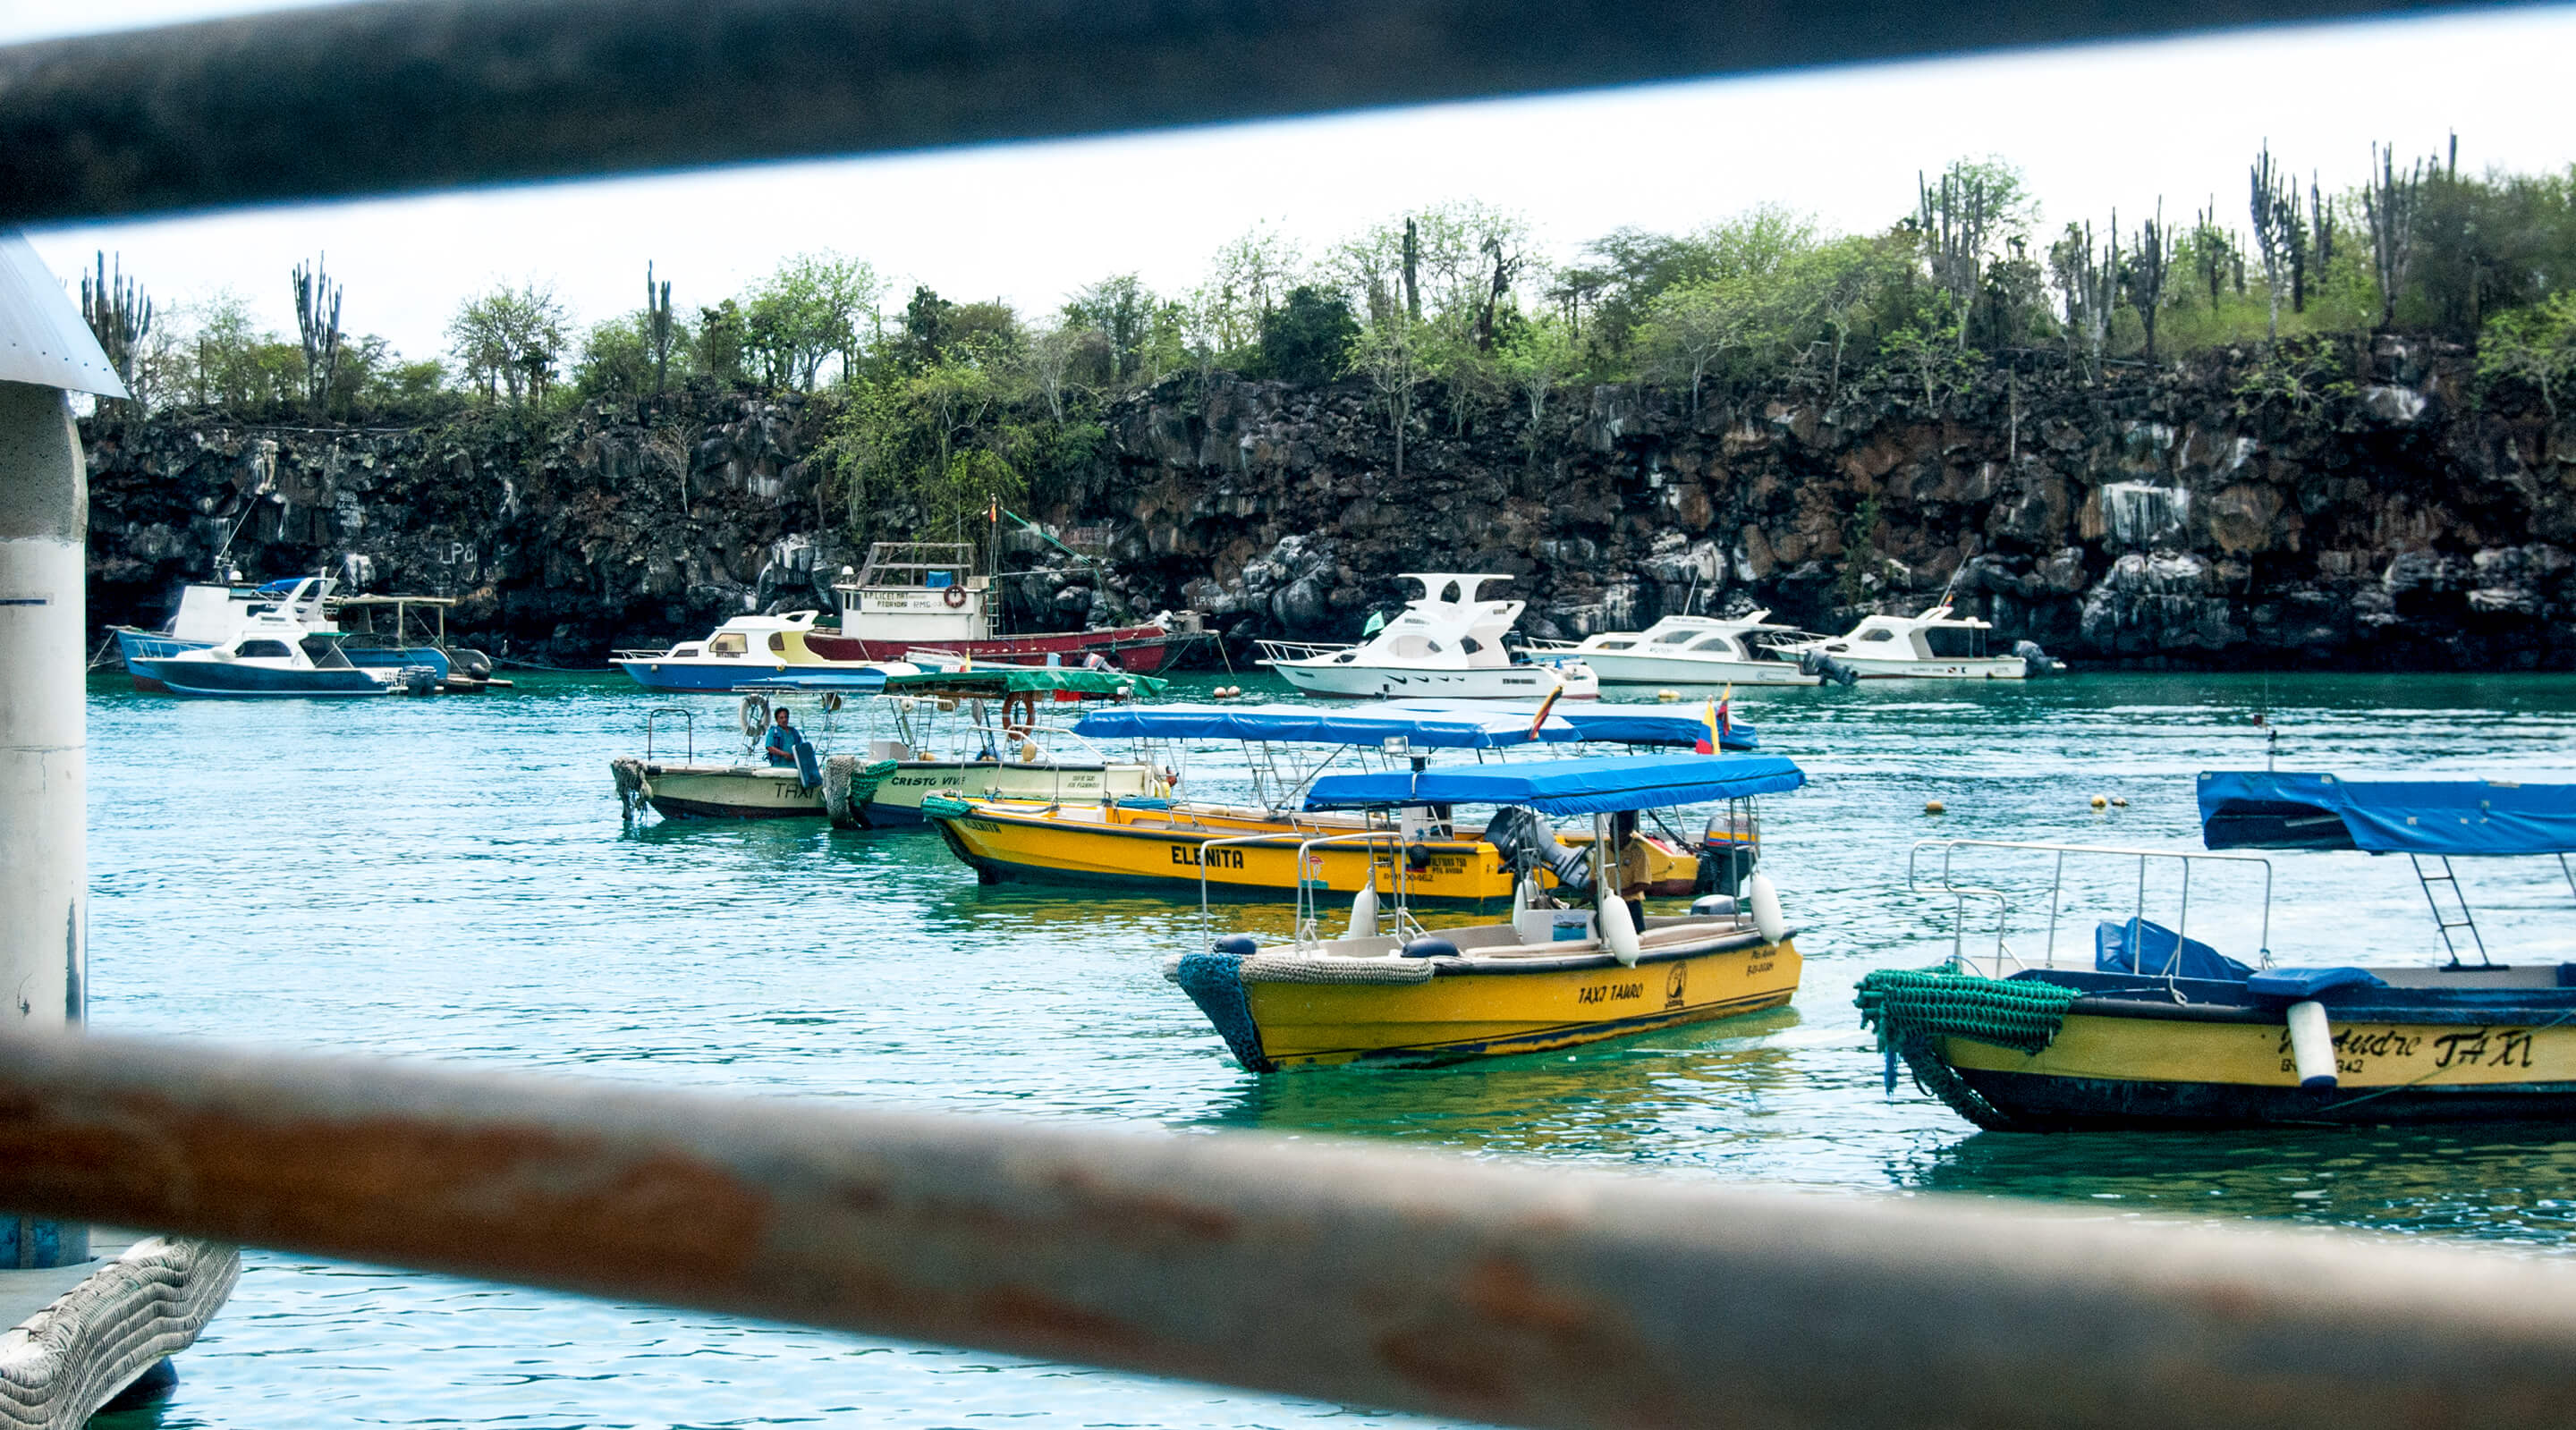 Puerto Ayora water taxi. ©2018 amin-saidi-imagery.com